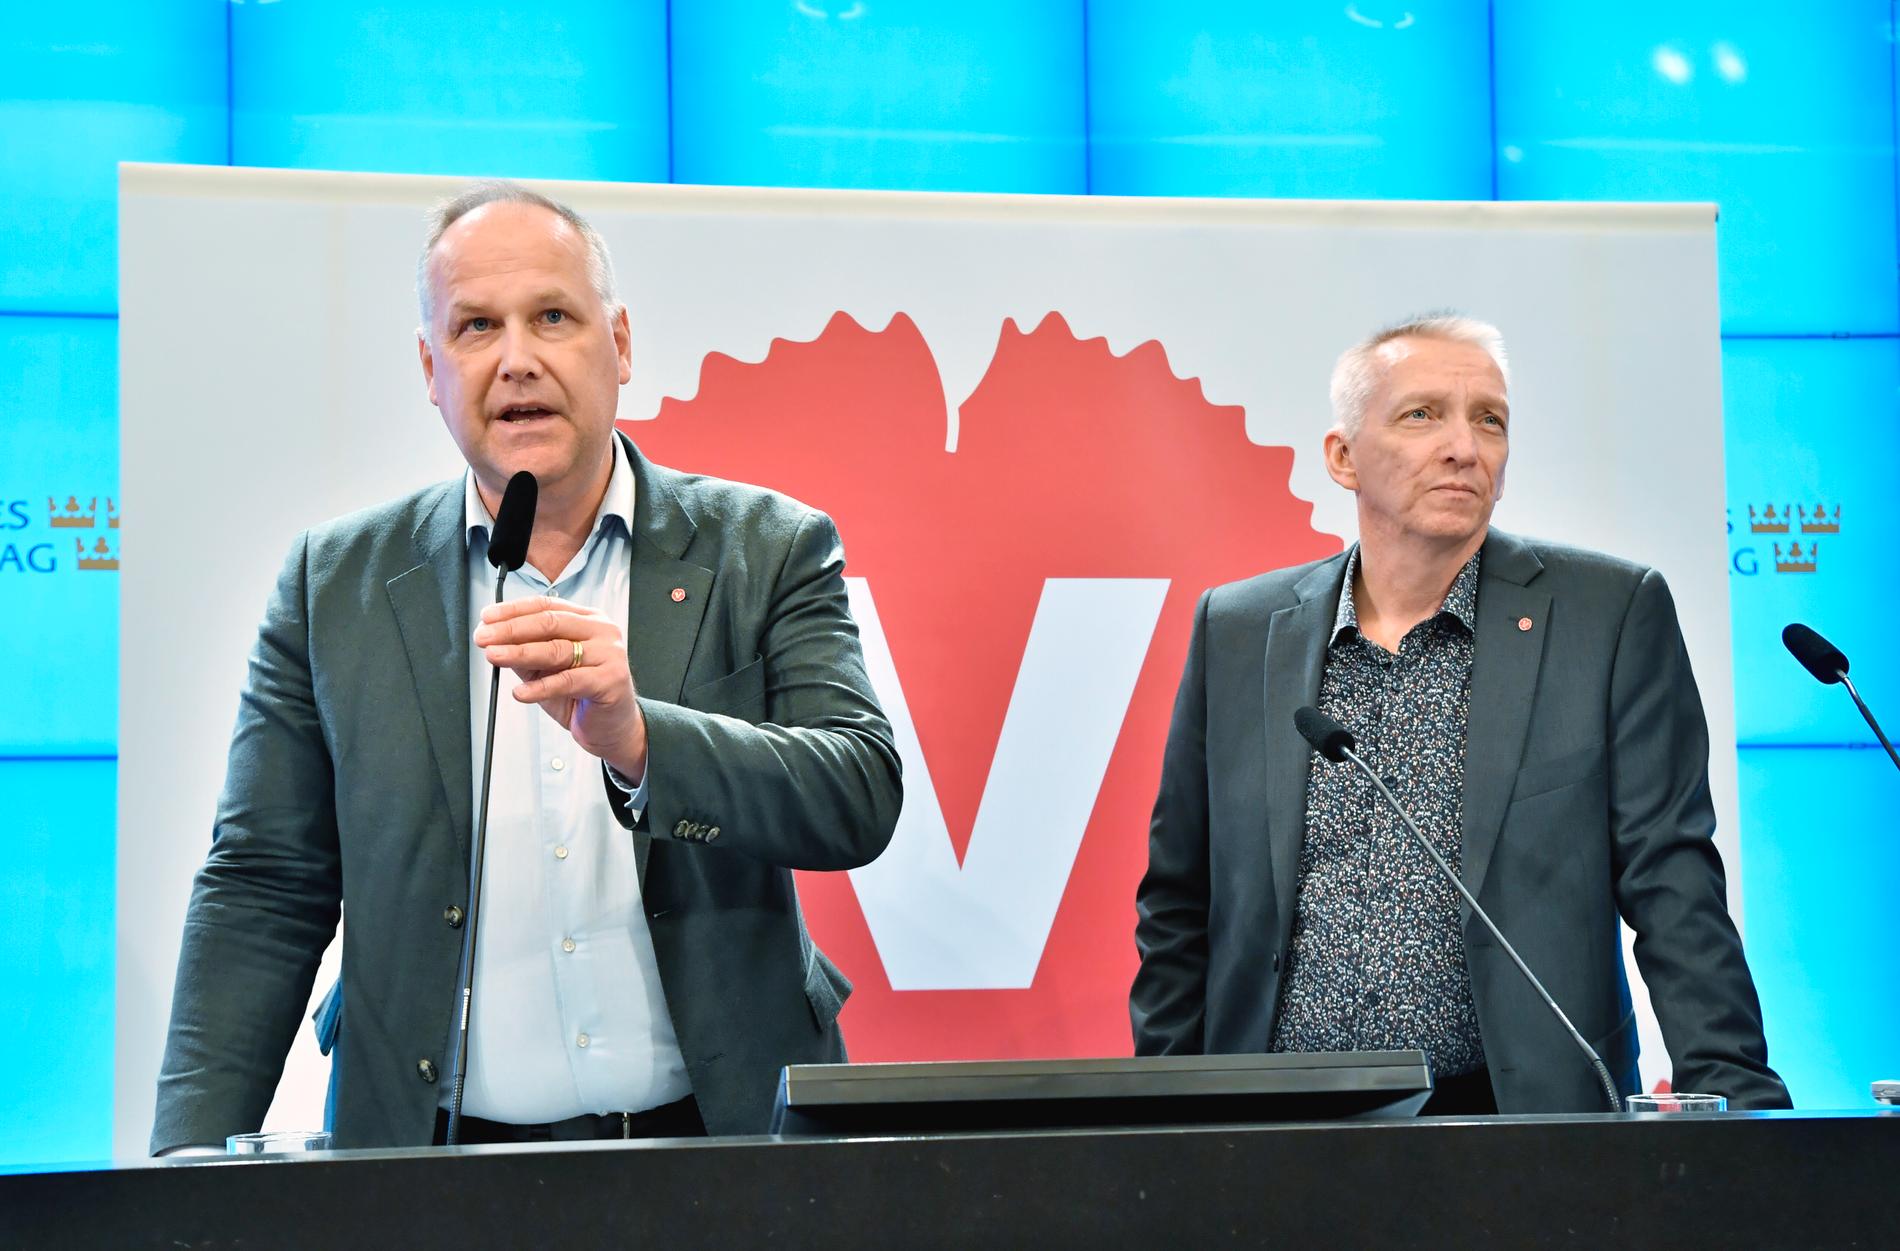 Vänsterpartiets ledare Jonas Sjöstedt och partiets energipolitiske talesperson Birger Lahti (V) erbjuder sig att bli stödben för regeringens energiöverenskommelse.